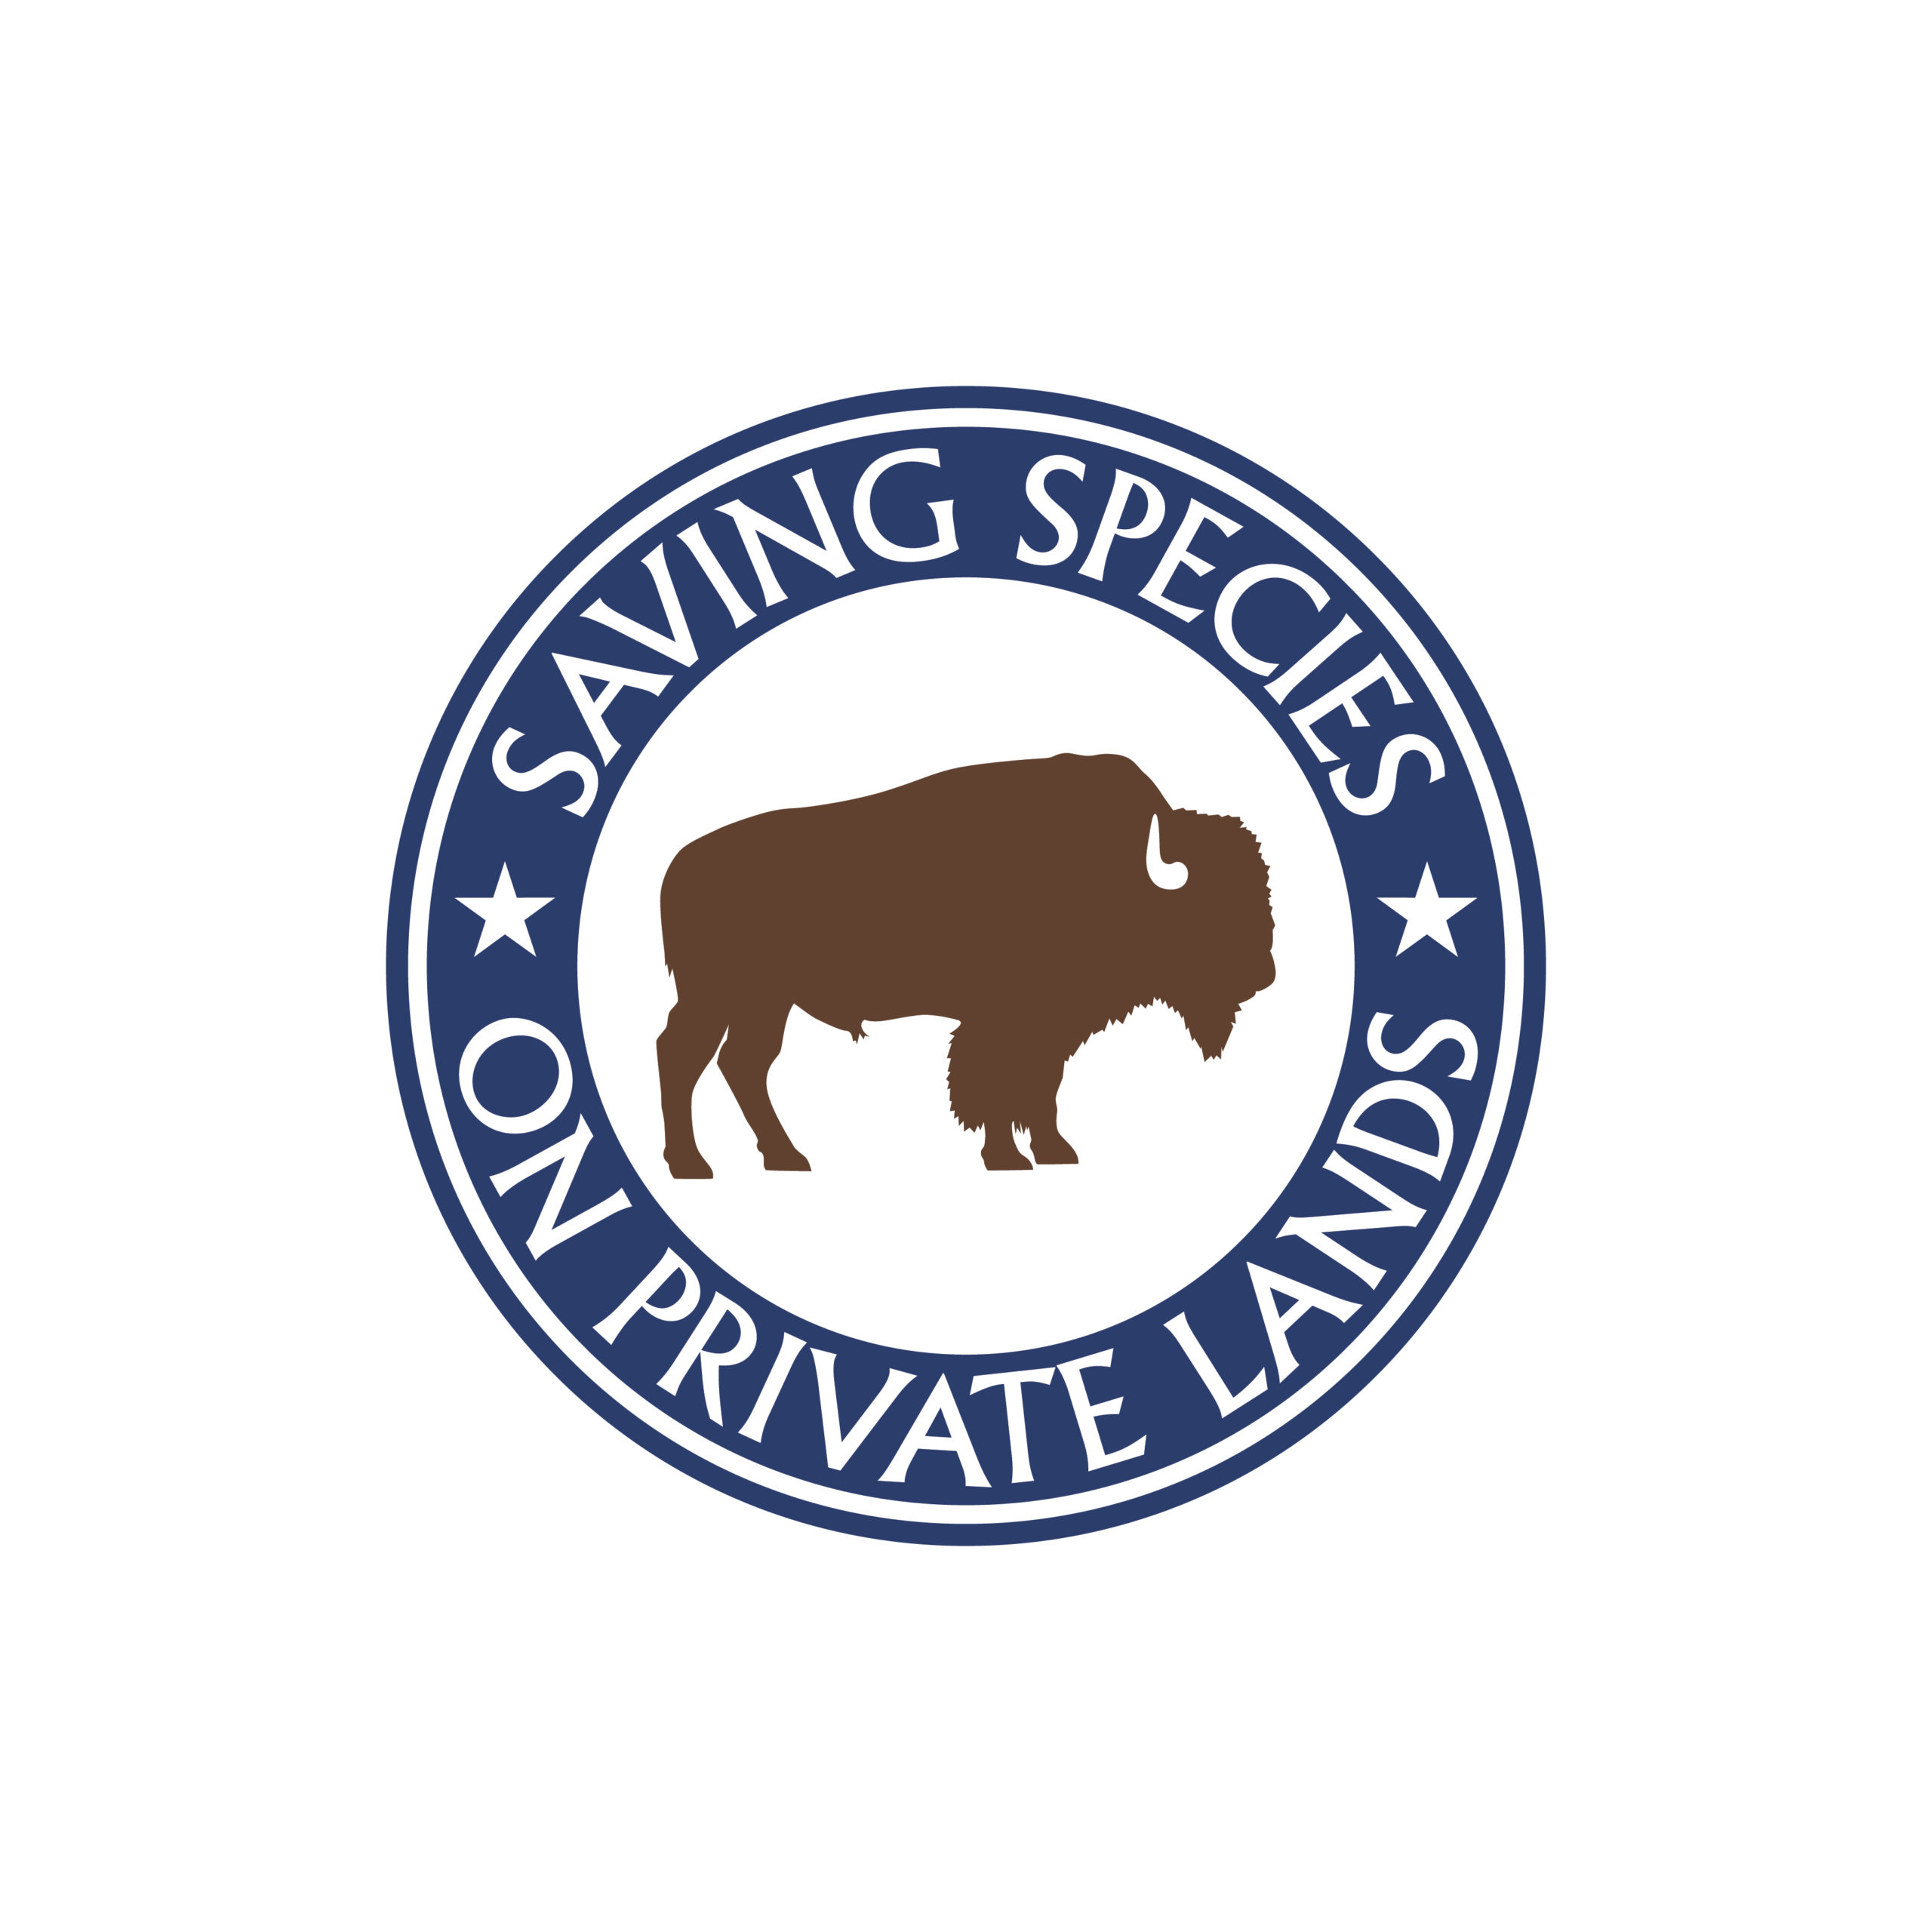 Saving Species Logo